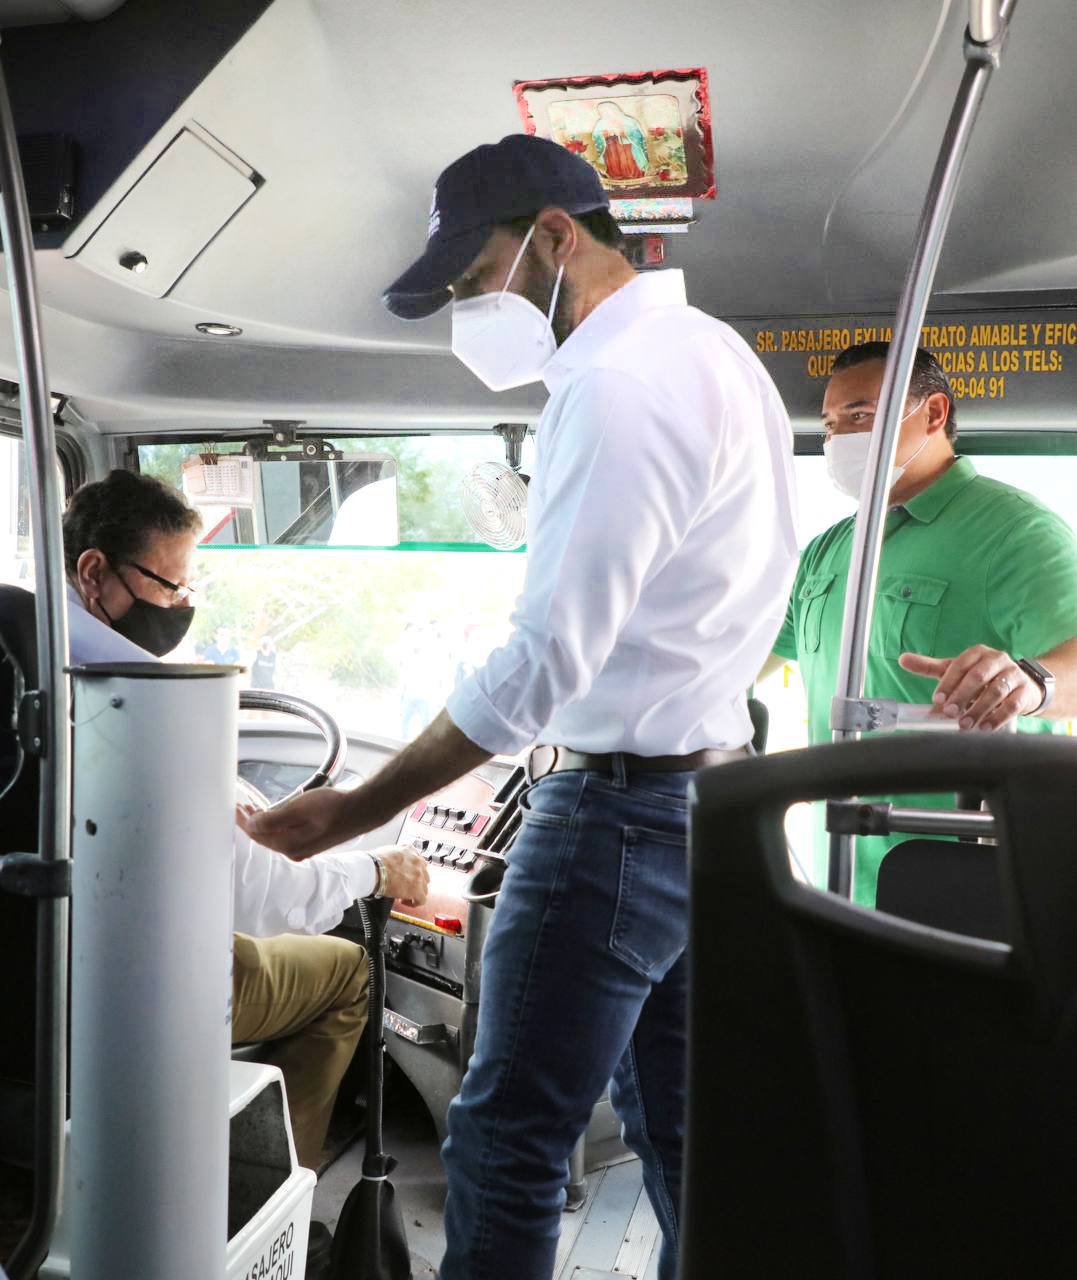 Autobuses del transporte público en Mérida cuentan ya con dispensadores de gel antibacterial